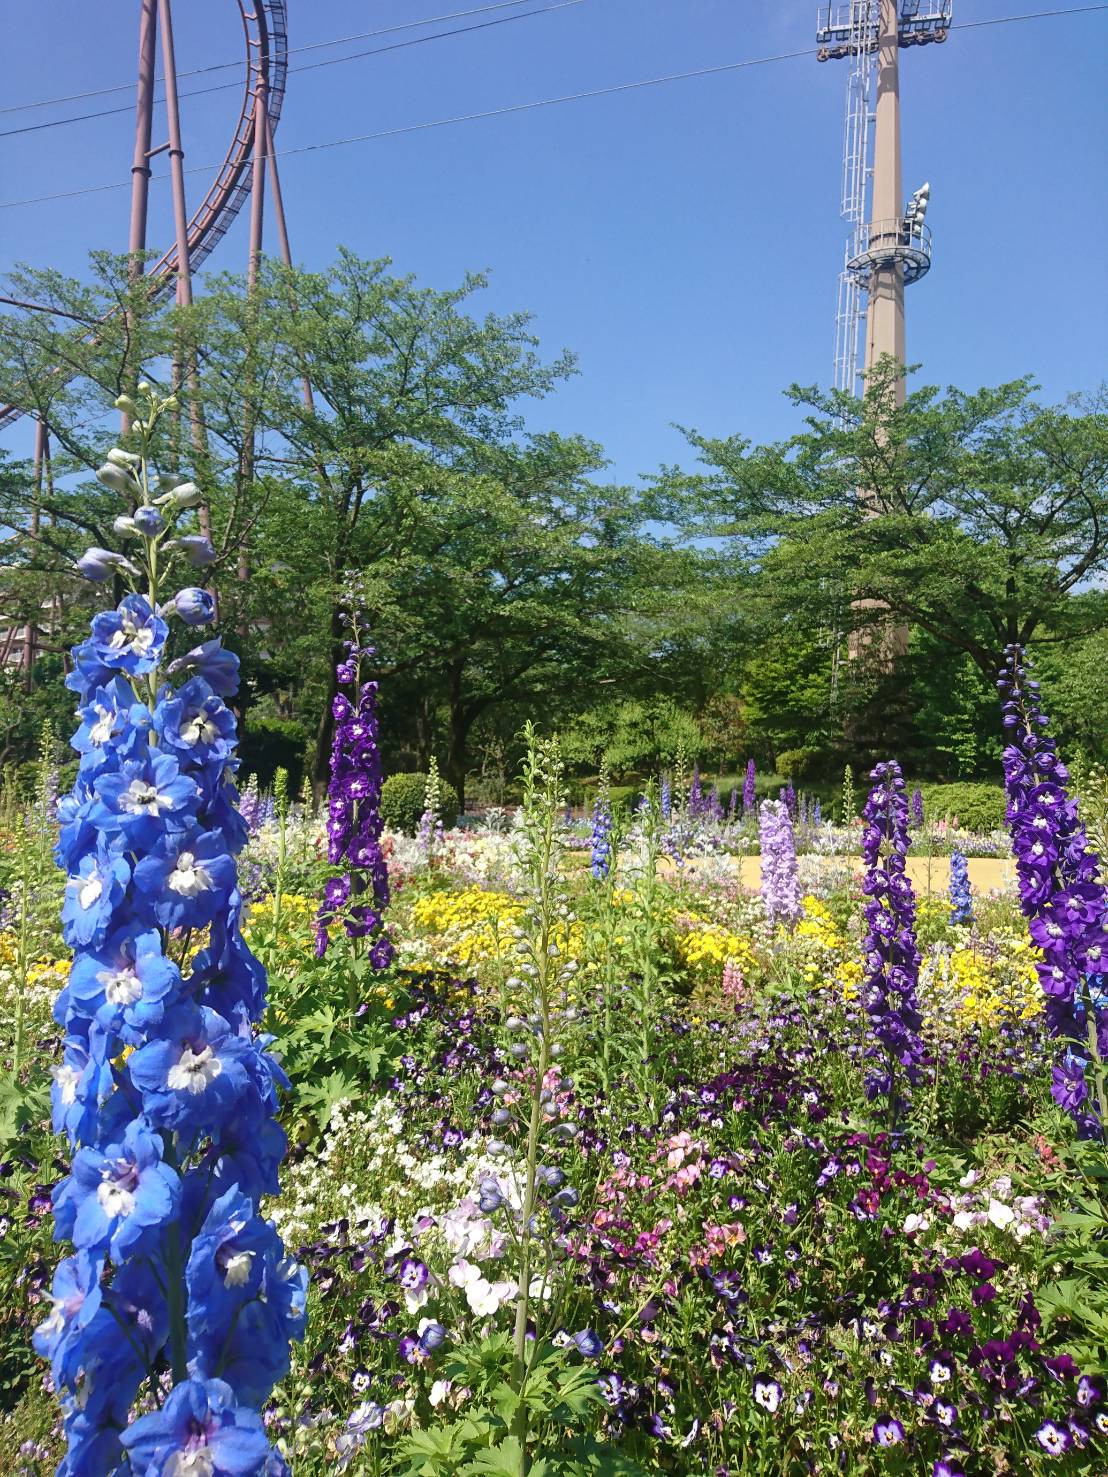 Hana Biyori 公式 デルフィニウム 優雅で美しい花姿から ウェディング等でも人気の高い デルフィニウム が 四季の庭を華やかなブルーに彩っています デルフィニウムの花言葉は清明 名前は 蕾がイルカ ﾄﾞﾙﾌｨﾝ に似ていることから由来